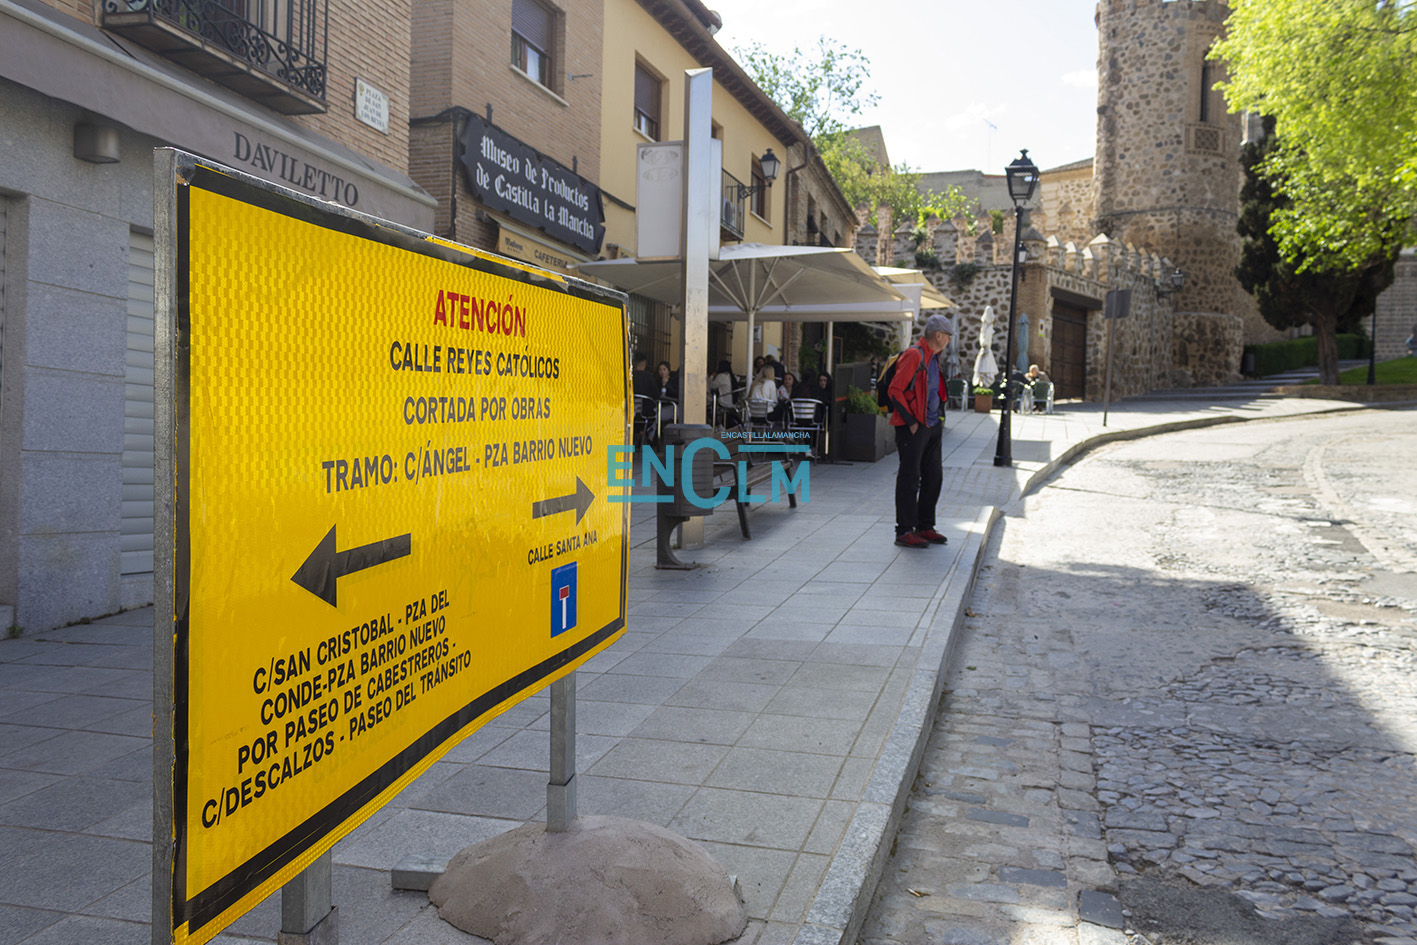 El lunes 20 comienza el tramo de obras entre la Puerta del Cambrón y San Juan de los Reyes. Foto: Gema Módenes.